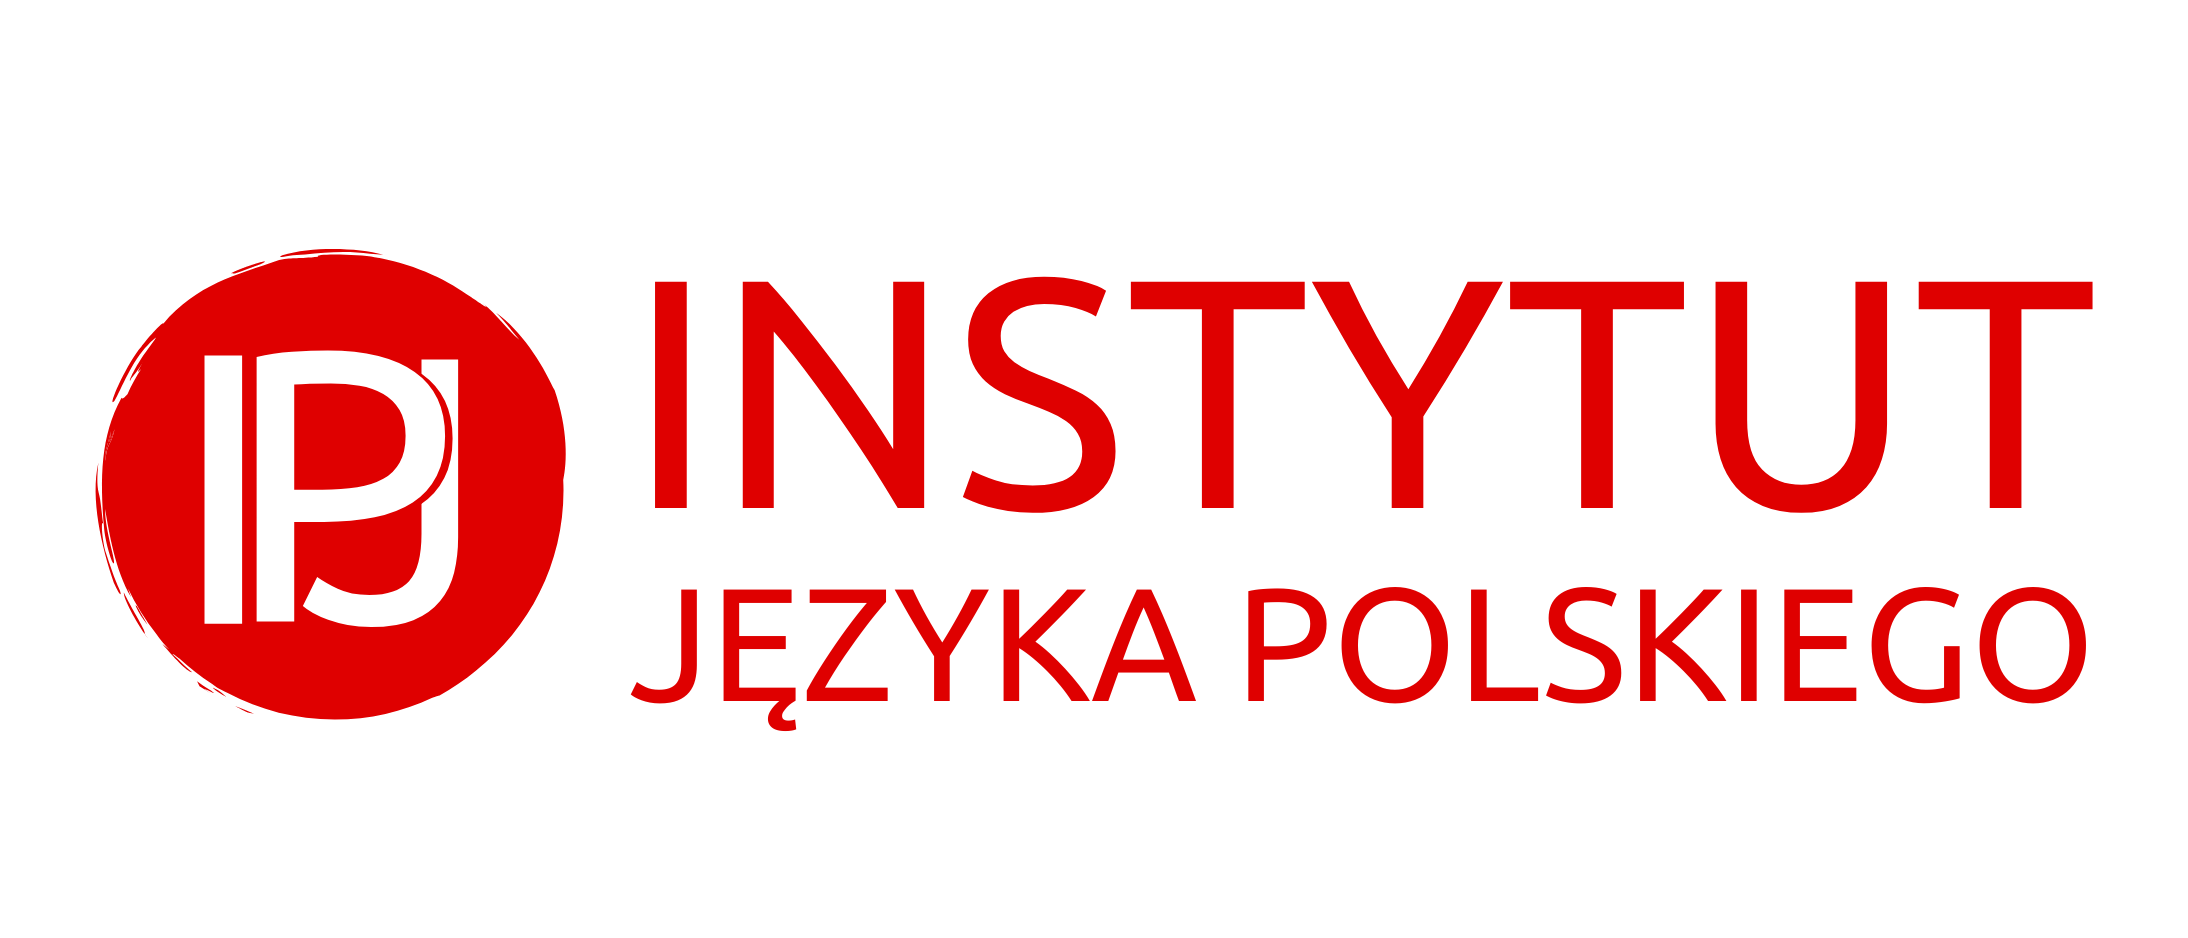 Instytut języka polskiego